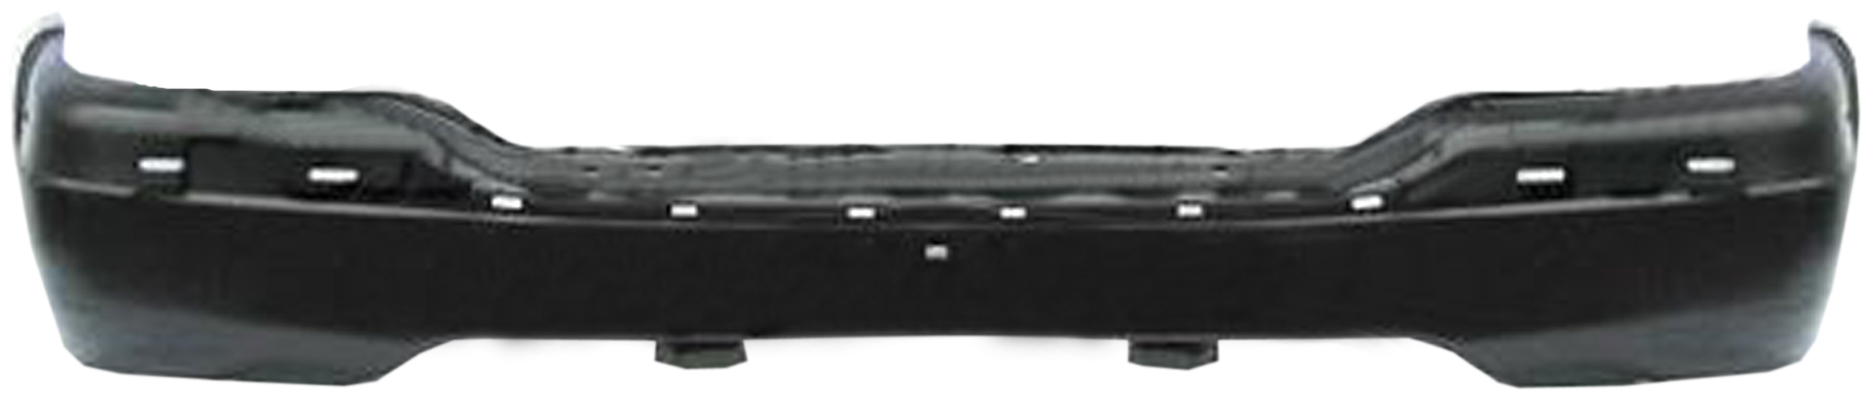 Aftermarket METAL FRONT BUMPERS for CHEVROLET - SILVERADO 1500, SILVERADO 1500,99-02,Front bumper face bar